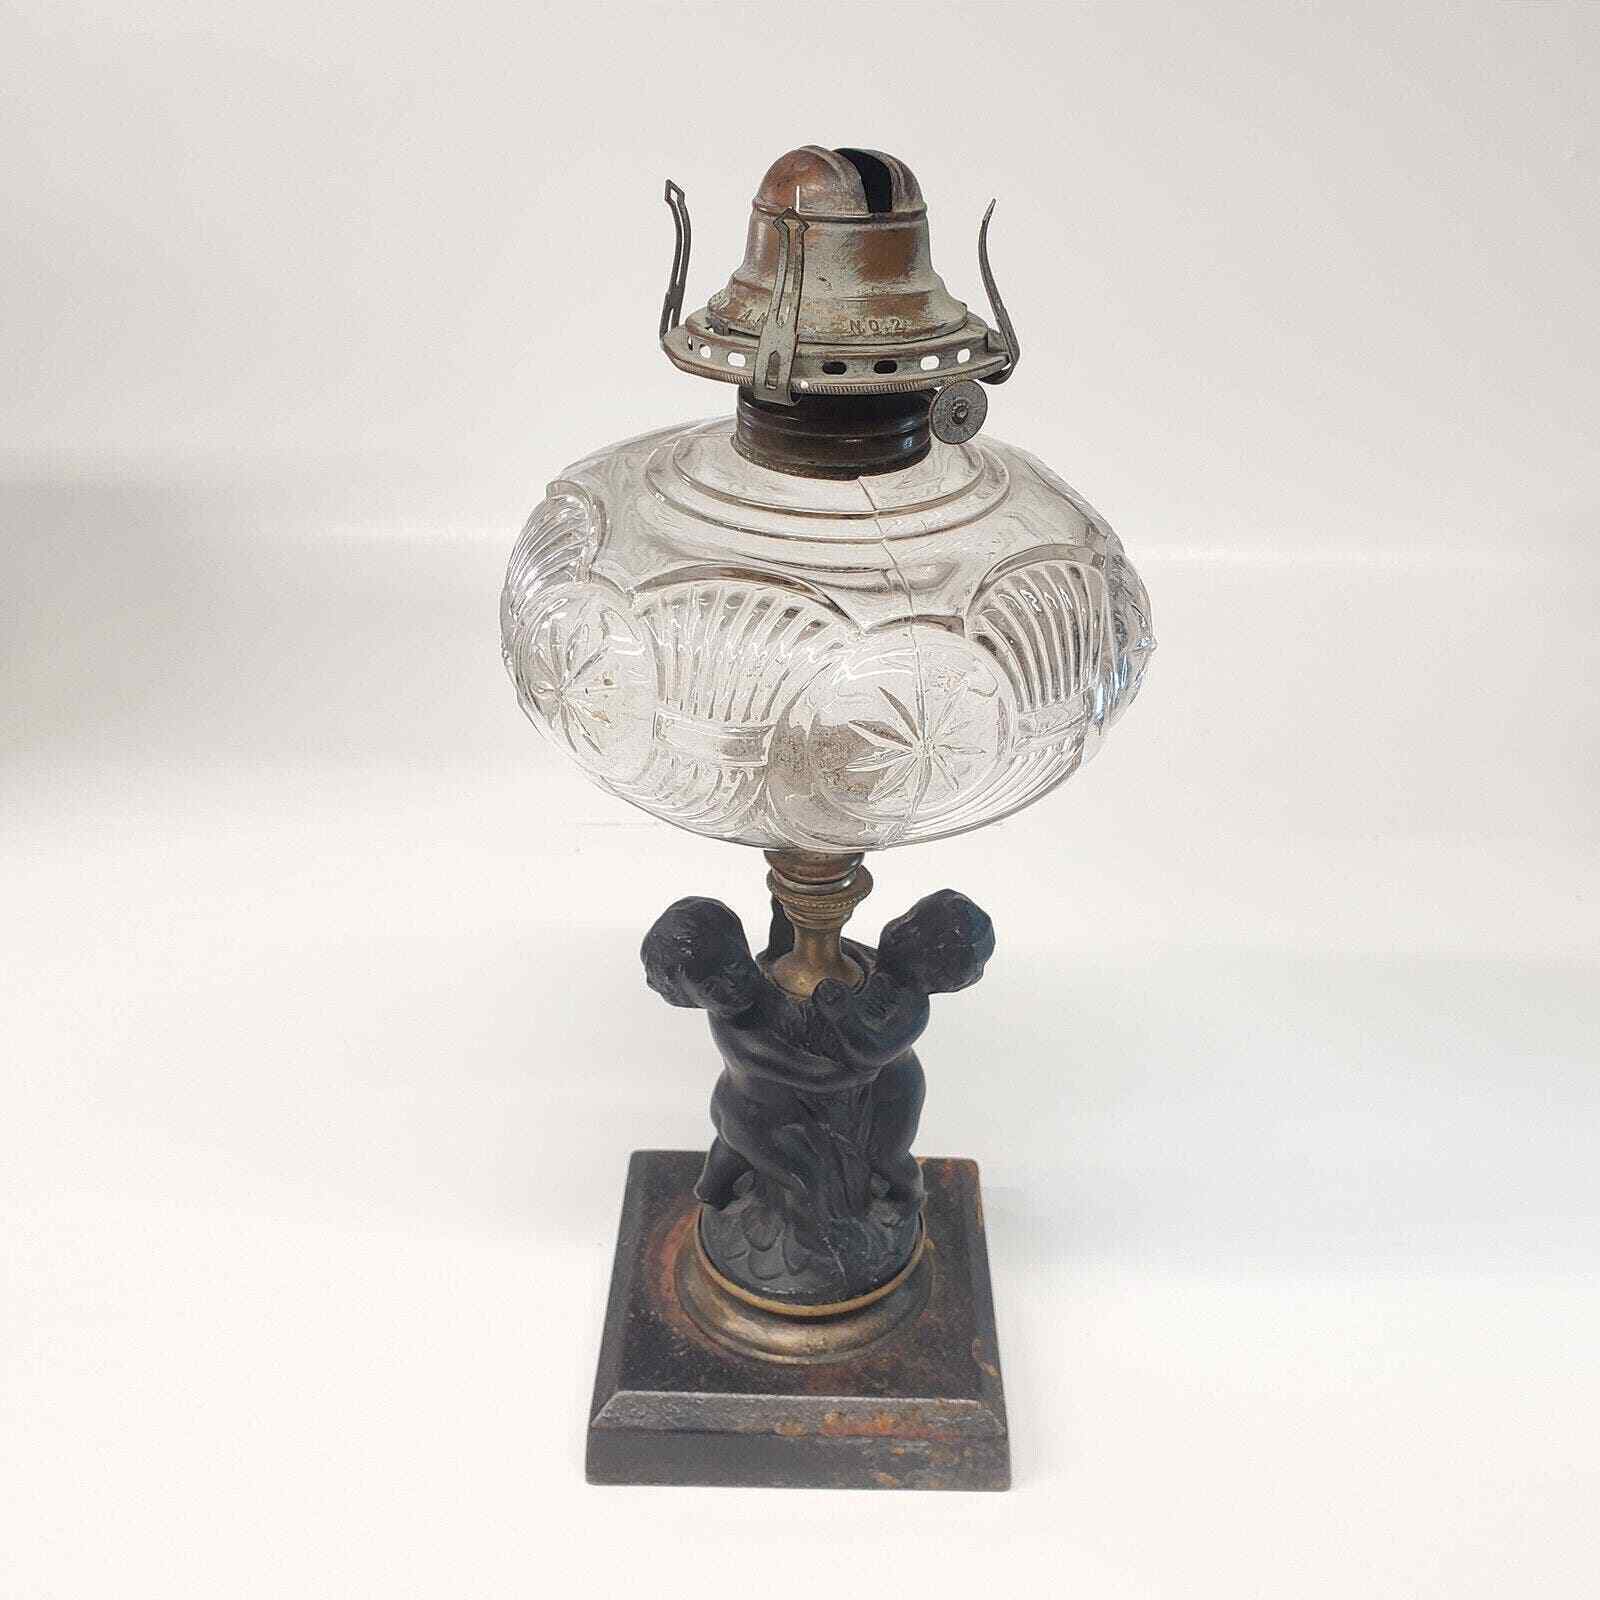 Antique Queen Anne Oil Lamp No. 2 Cast Iron Cherub Children Base